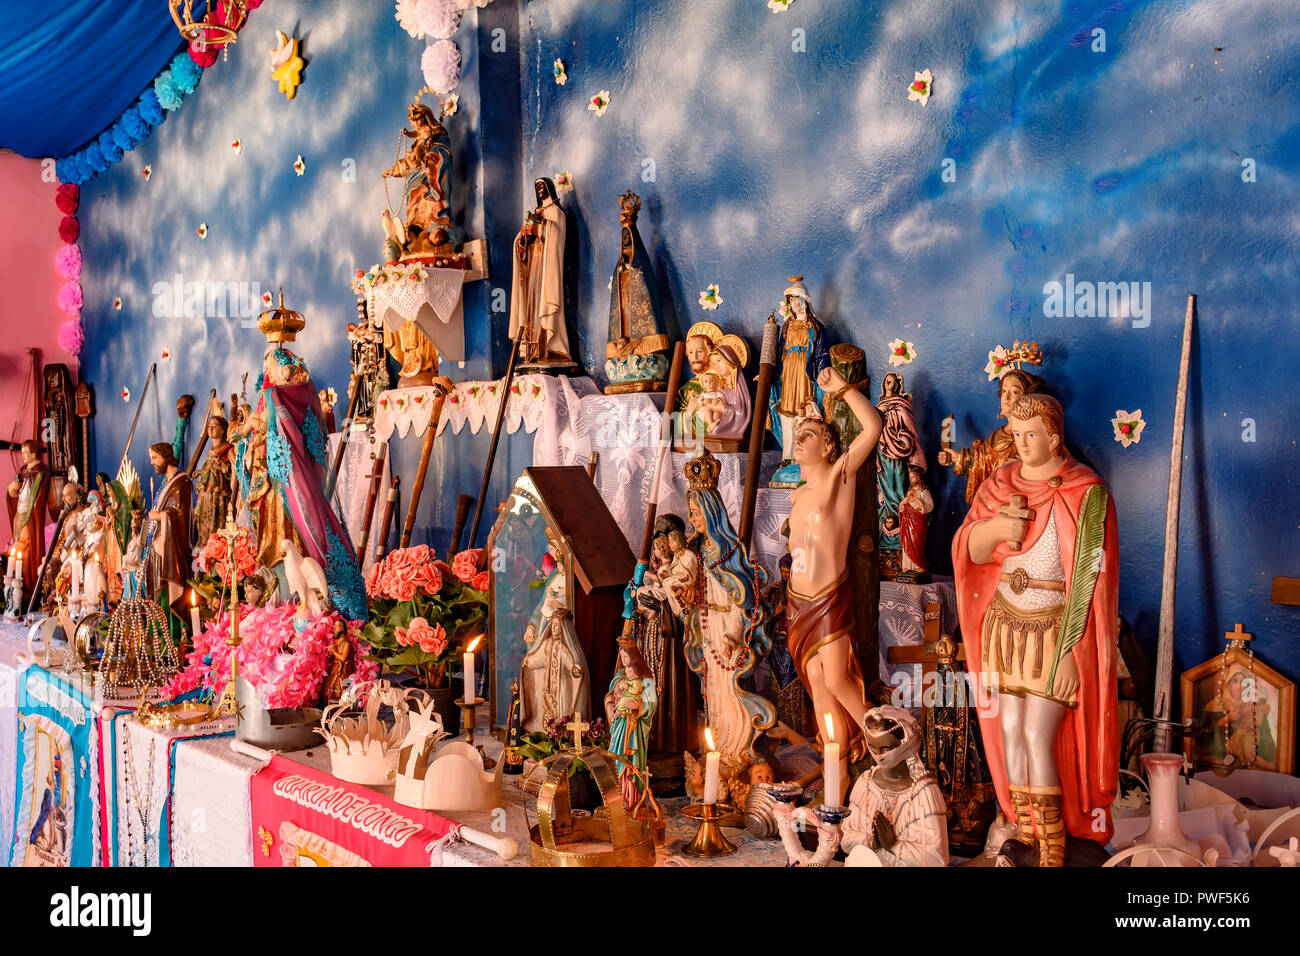 Brasilianischen religiösen Altar mischen Elemente der Umbanda, Candomblé und Katholizismus in der synkretismus in der lokalen Kultur und Religion Stockfoto